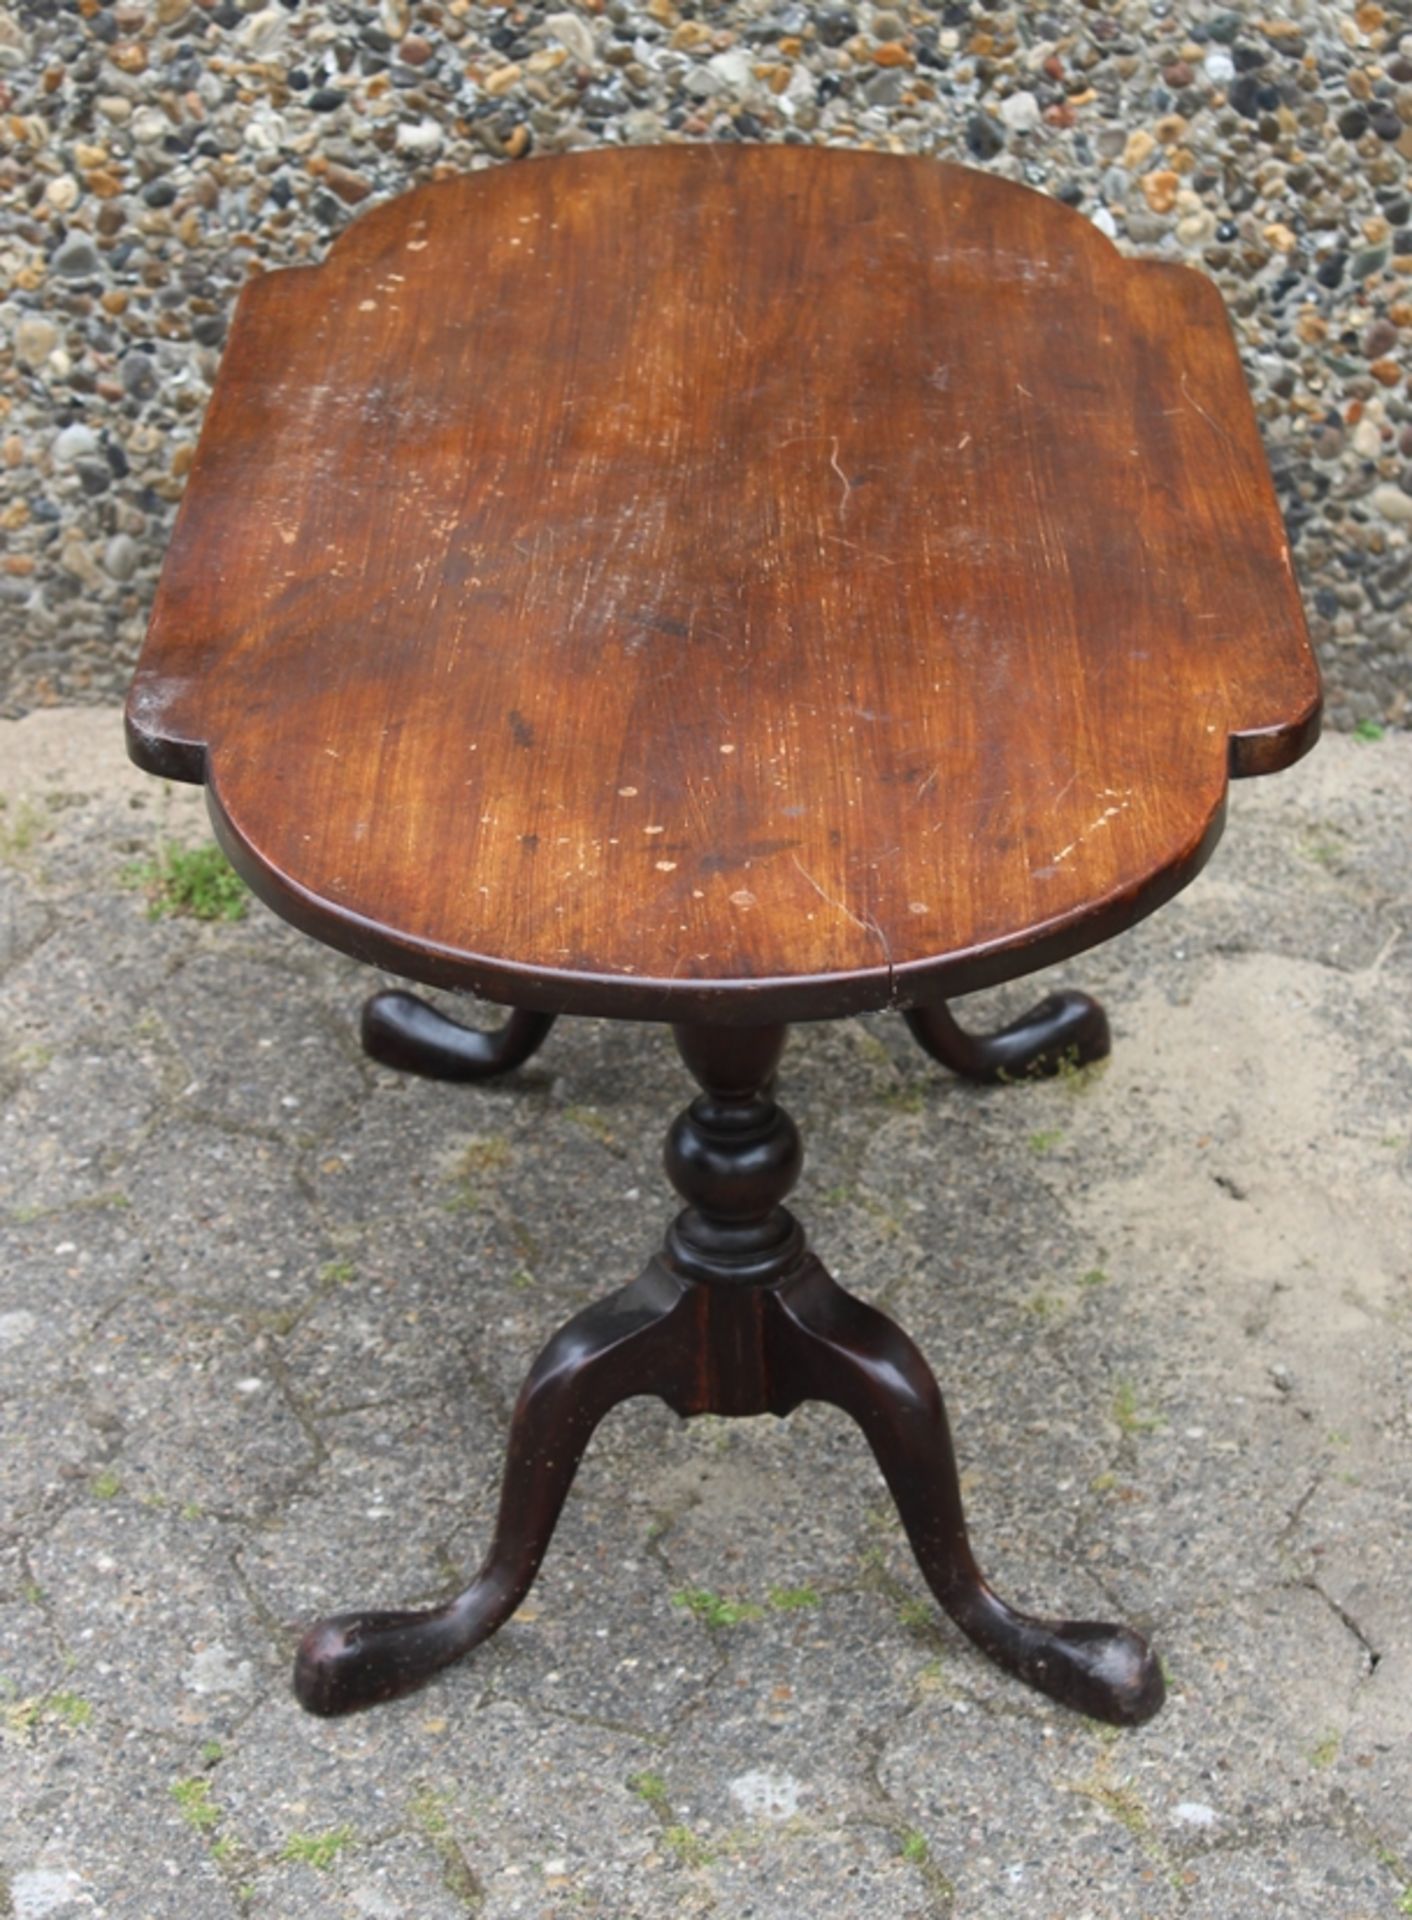 ovaler Tisch um 1900, Alters-u. Gebrauchsspuren, 1x Leimstelle gelöst, H-51cm B-108cm T-54,5cm. - Bild 4 aus 6